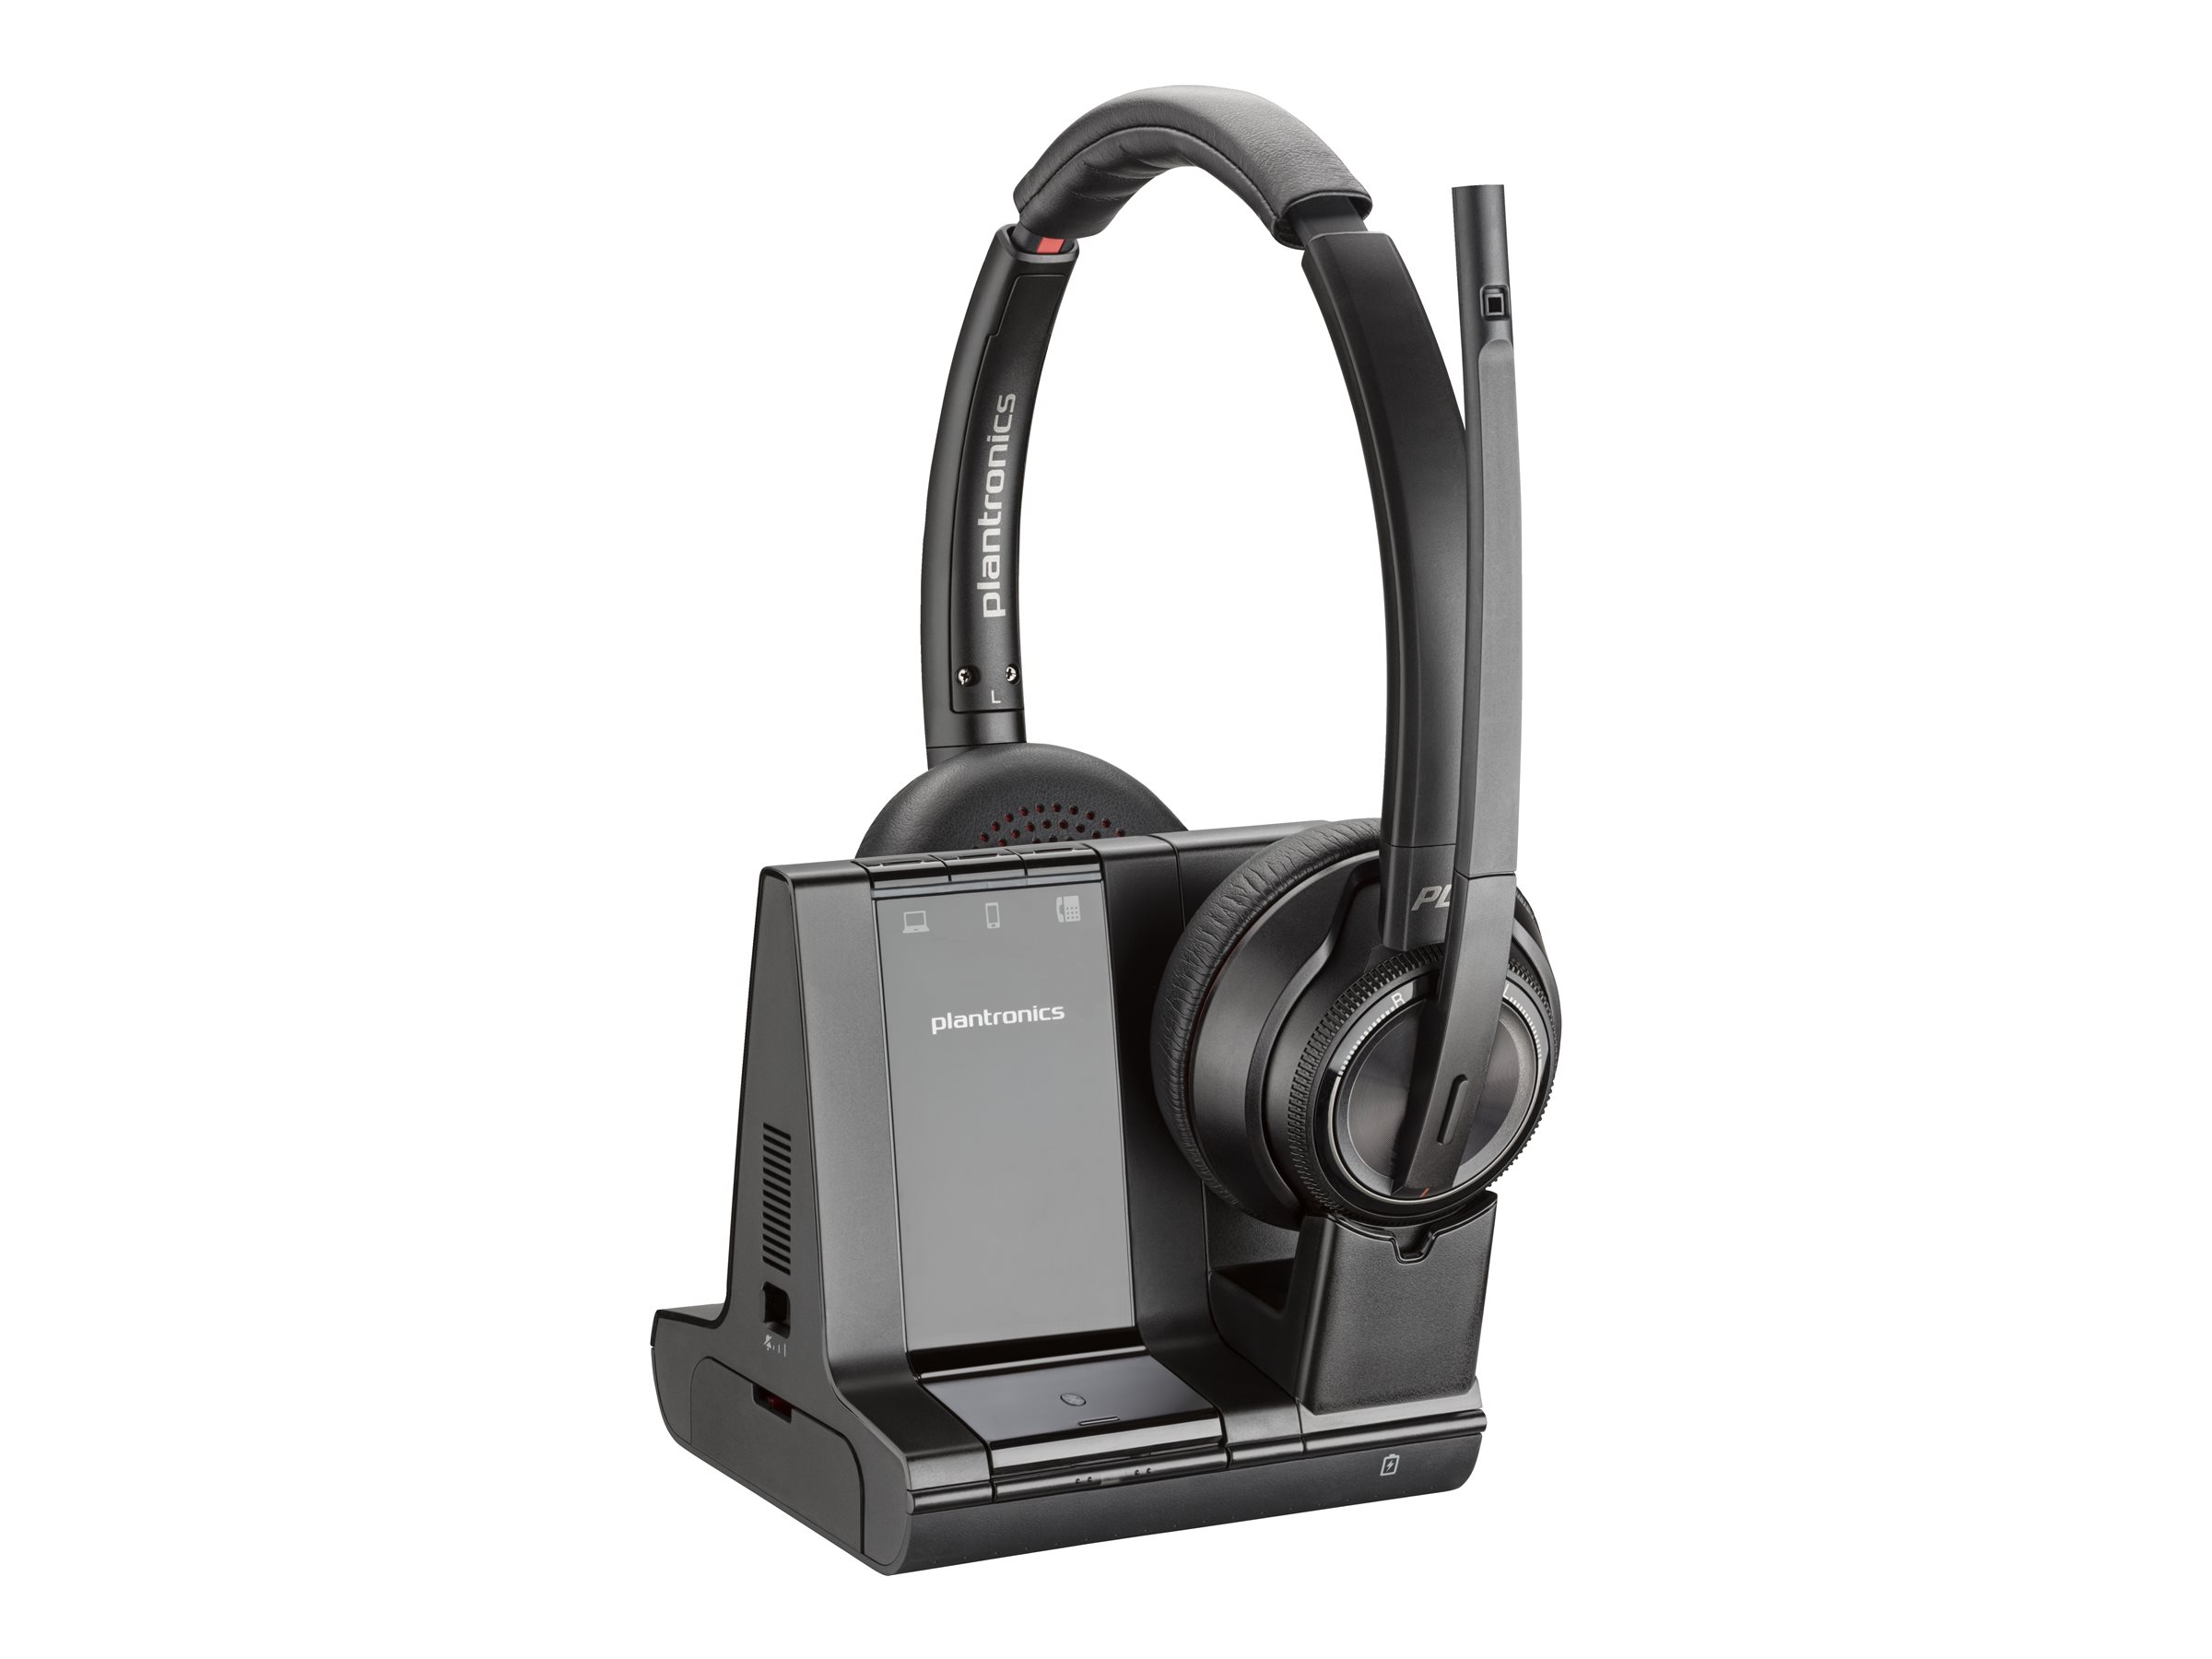 Poly Savi 8220 - Savi 8200 series - micro-casque - sur-oreille - DECT / Bluetooth - sans fil - USB-A via adaptateur Bluetooth - noir - Certifié pour Microsoft Teams, certifié UC - 8D3F5AA#ABB - Écouteurs